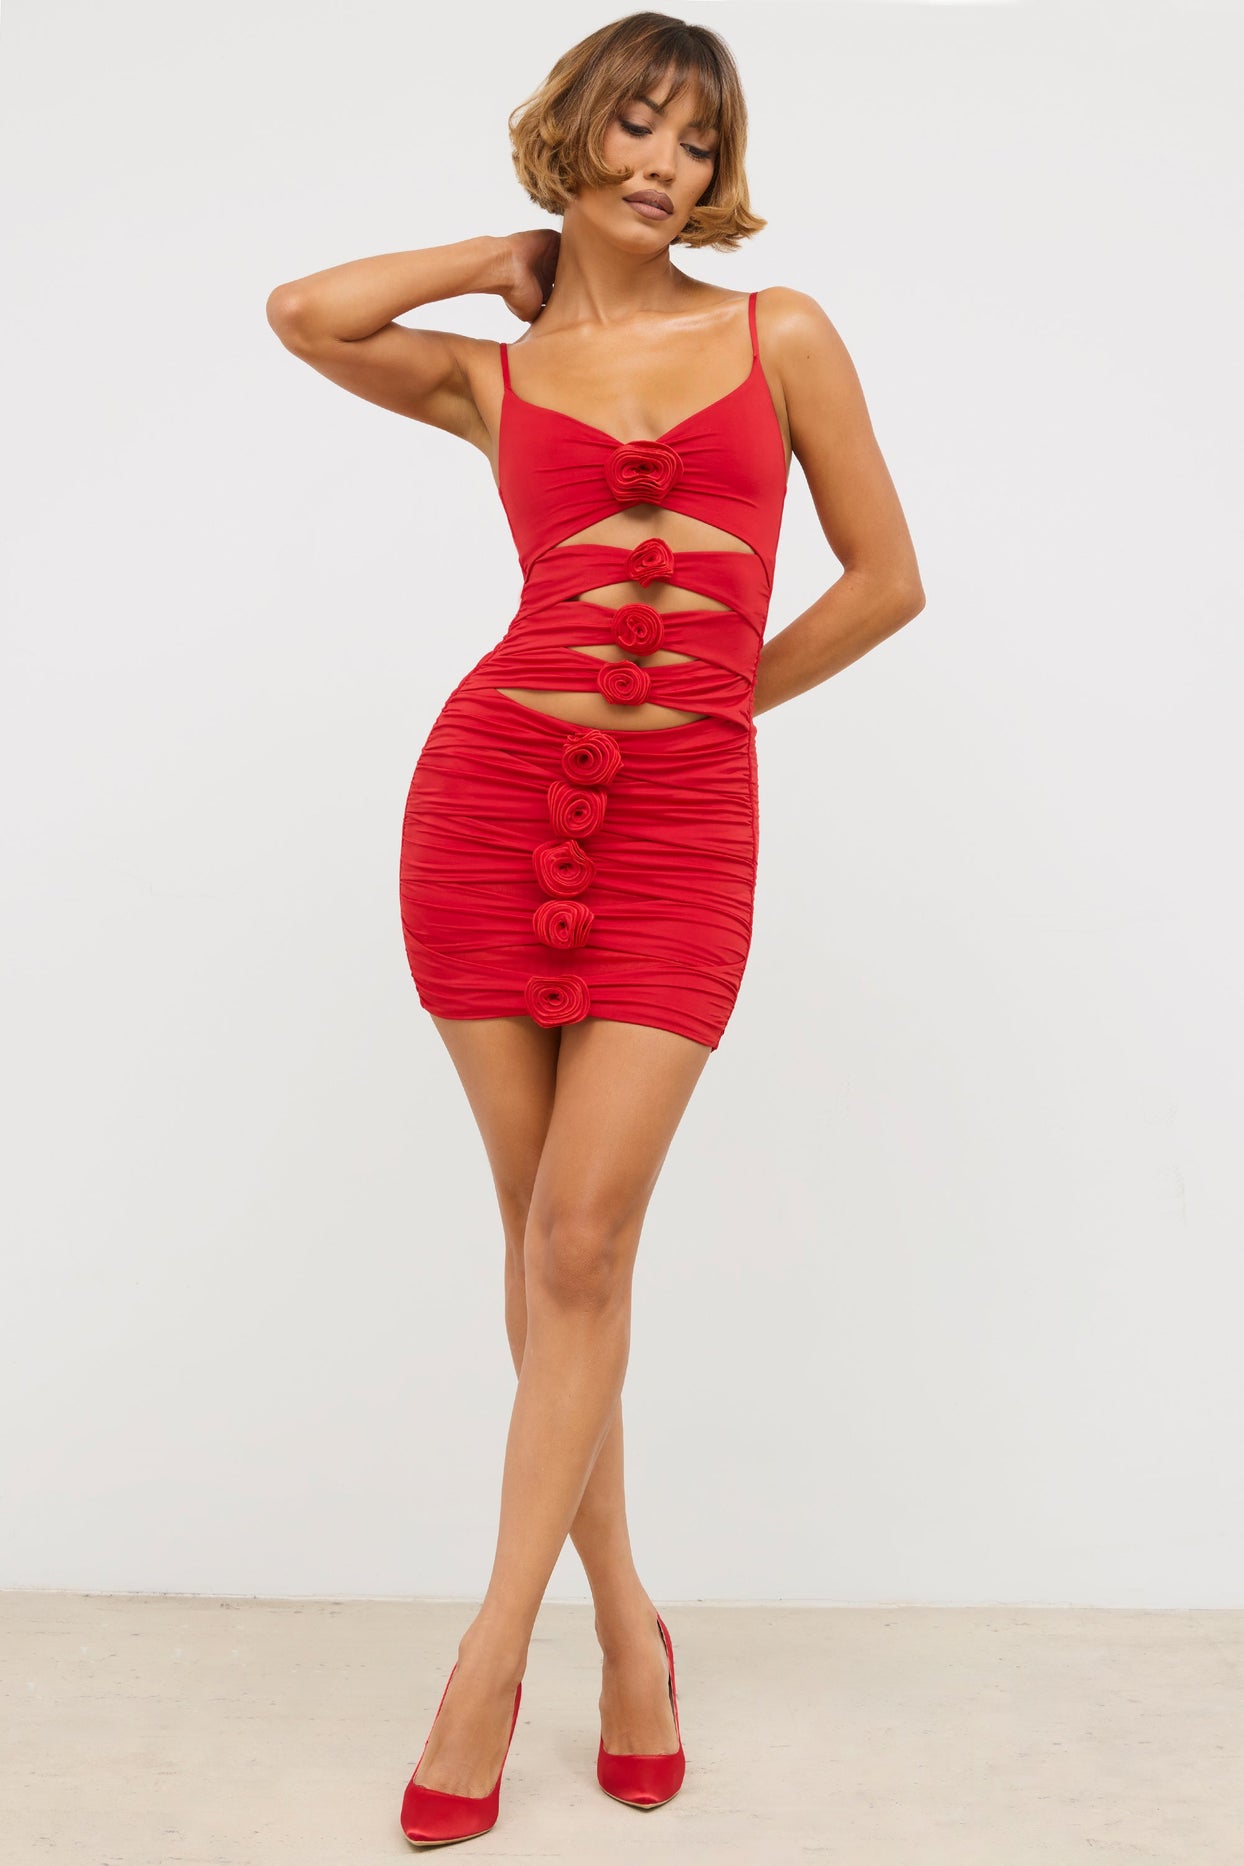 Jenna Rose Red Cutout Bandage Dress